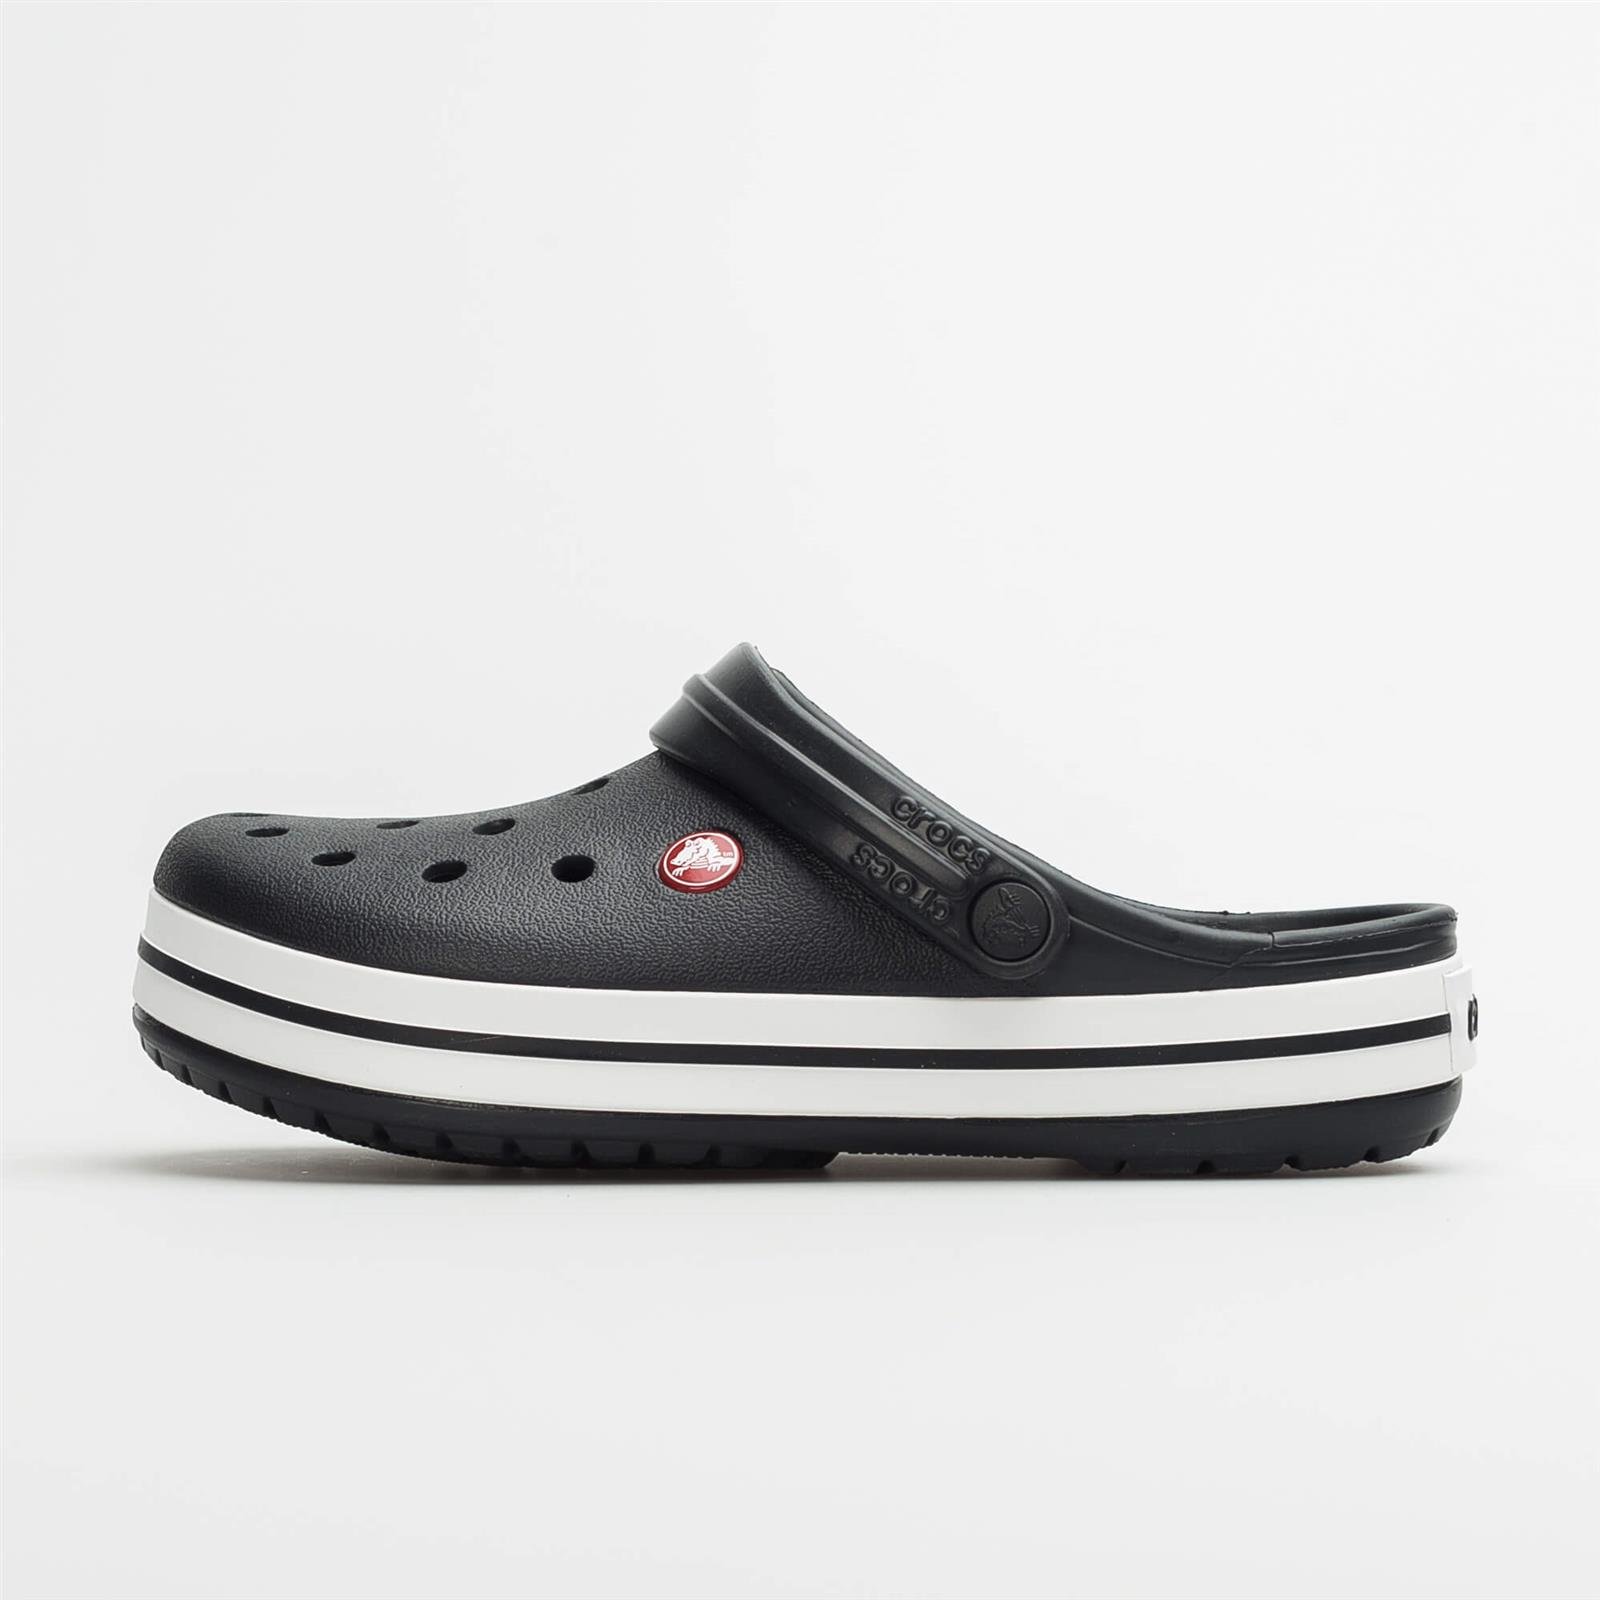 Crocs Crocband Clog Black | Women's \ Women's \ Flip-flops/Sandals Men's \ Men's footwear \ Flip-flops/Sandals Brands #Marki - 2 \ Crocs